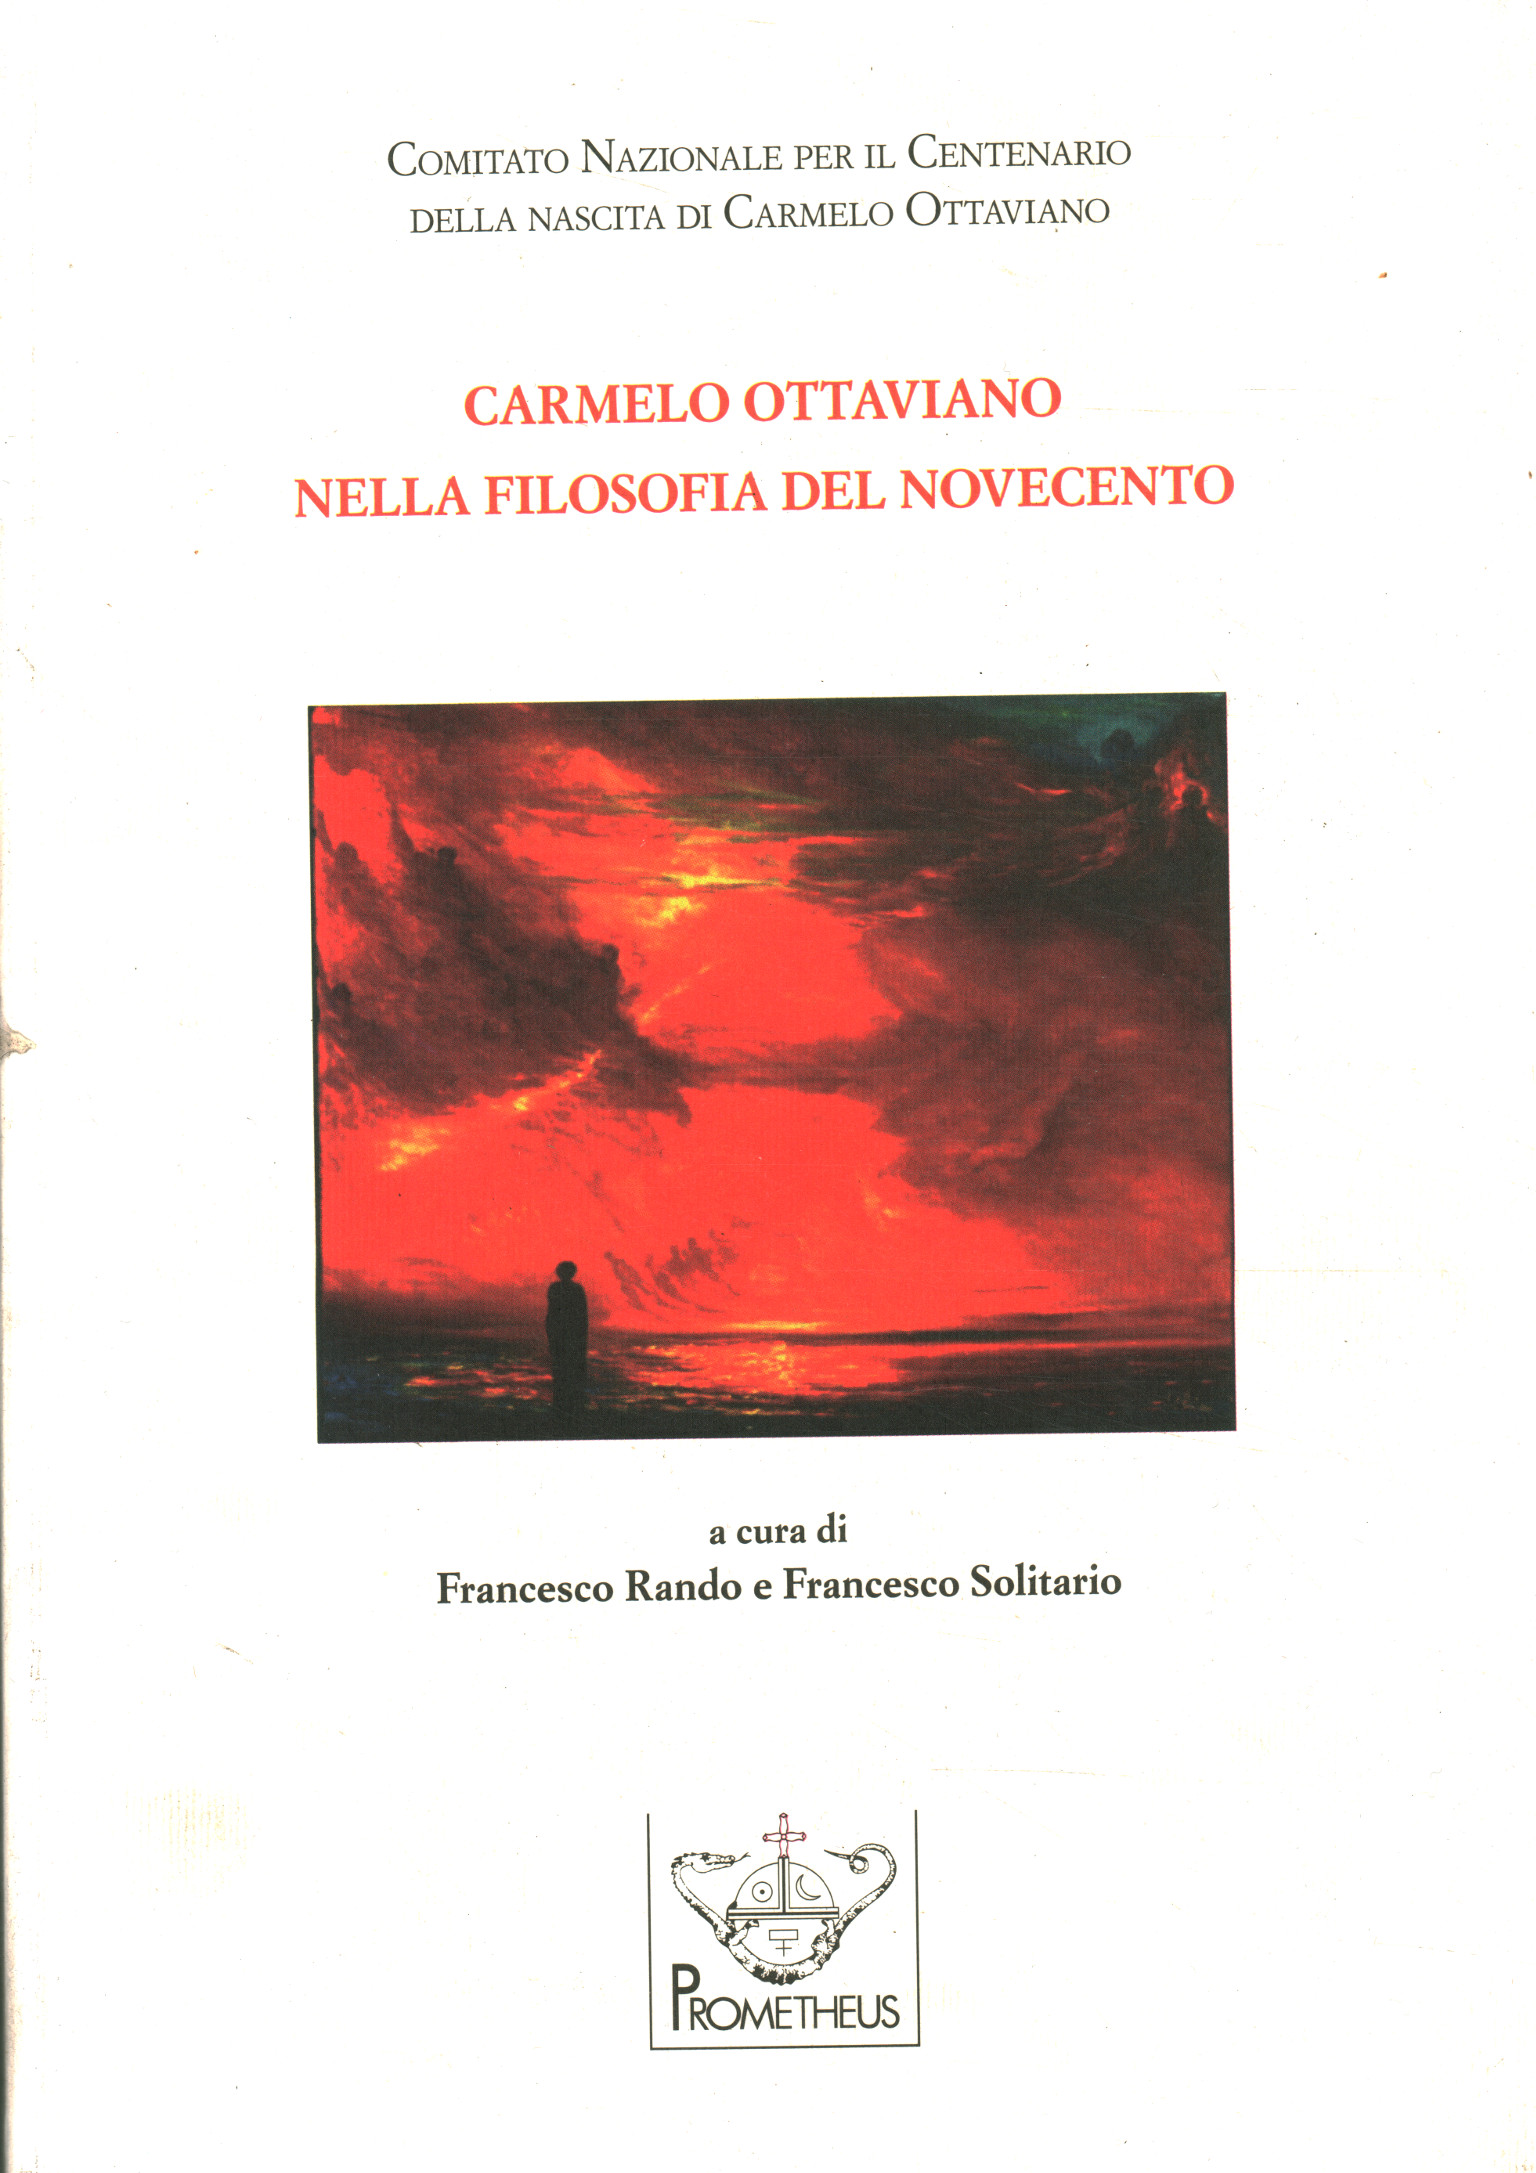 Carmelo Ottaviano in der Philosophie von Nr